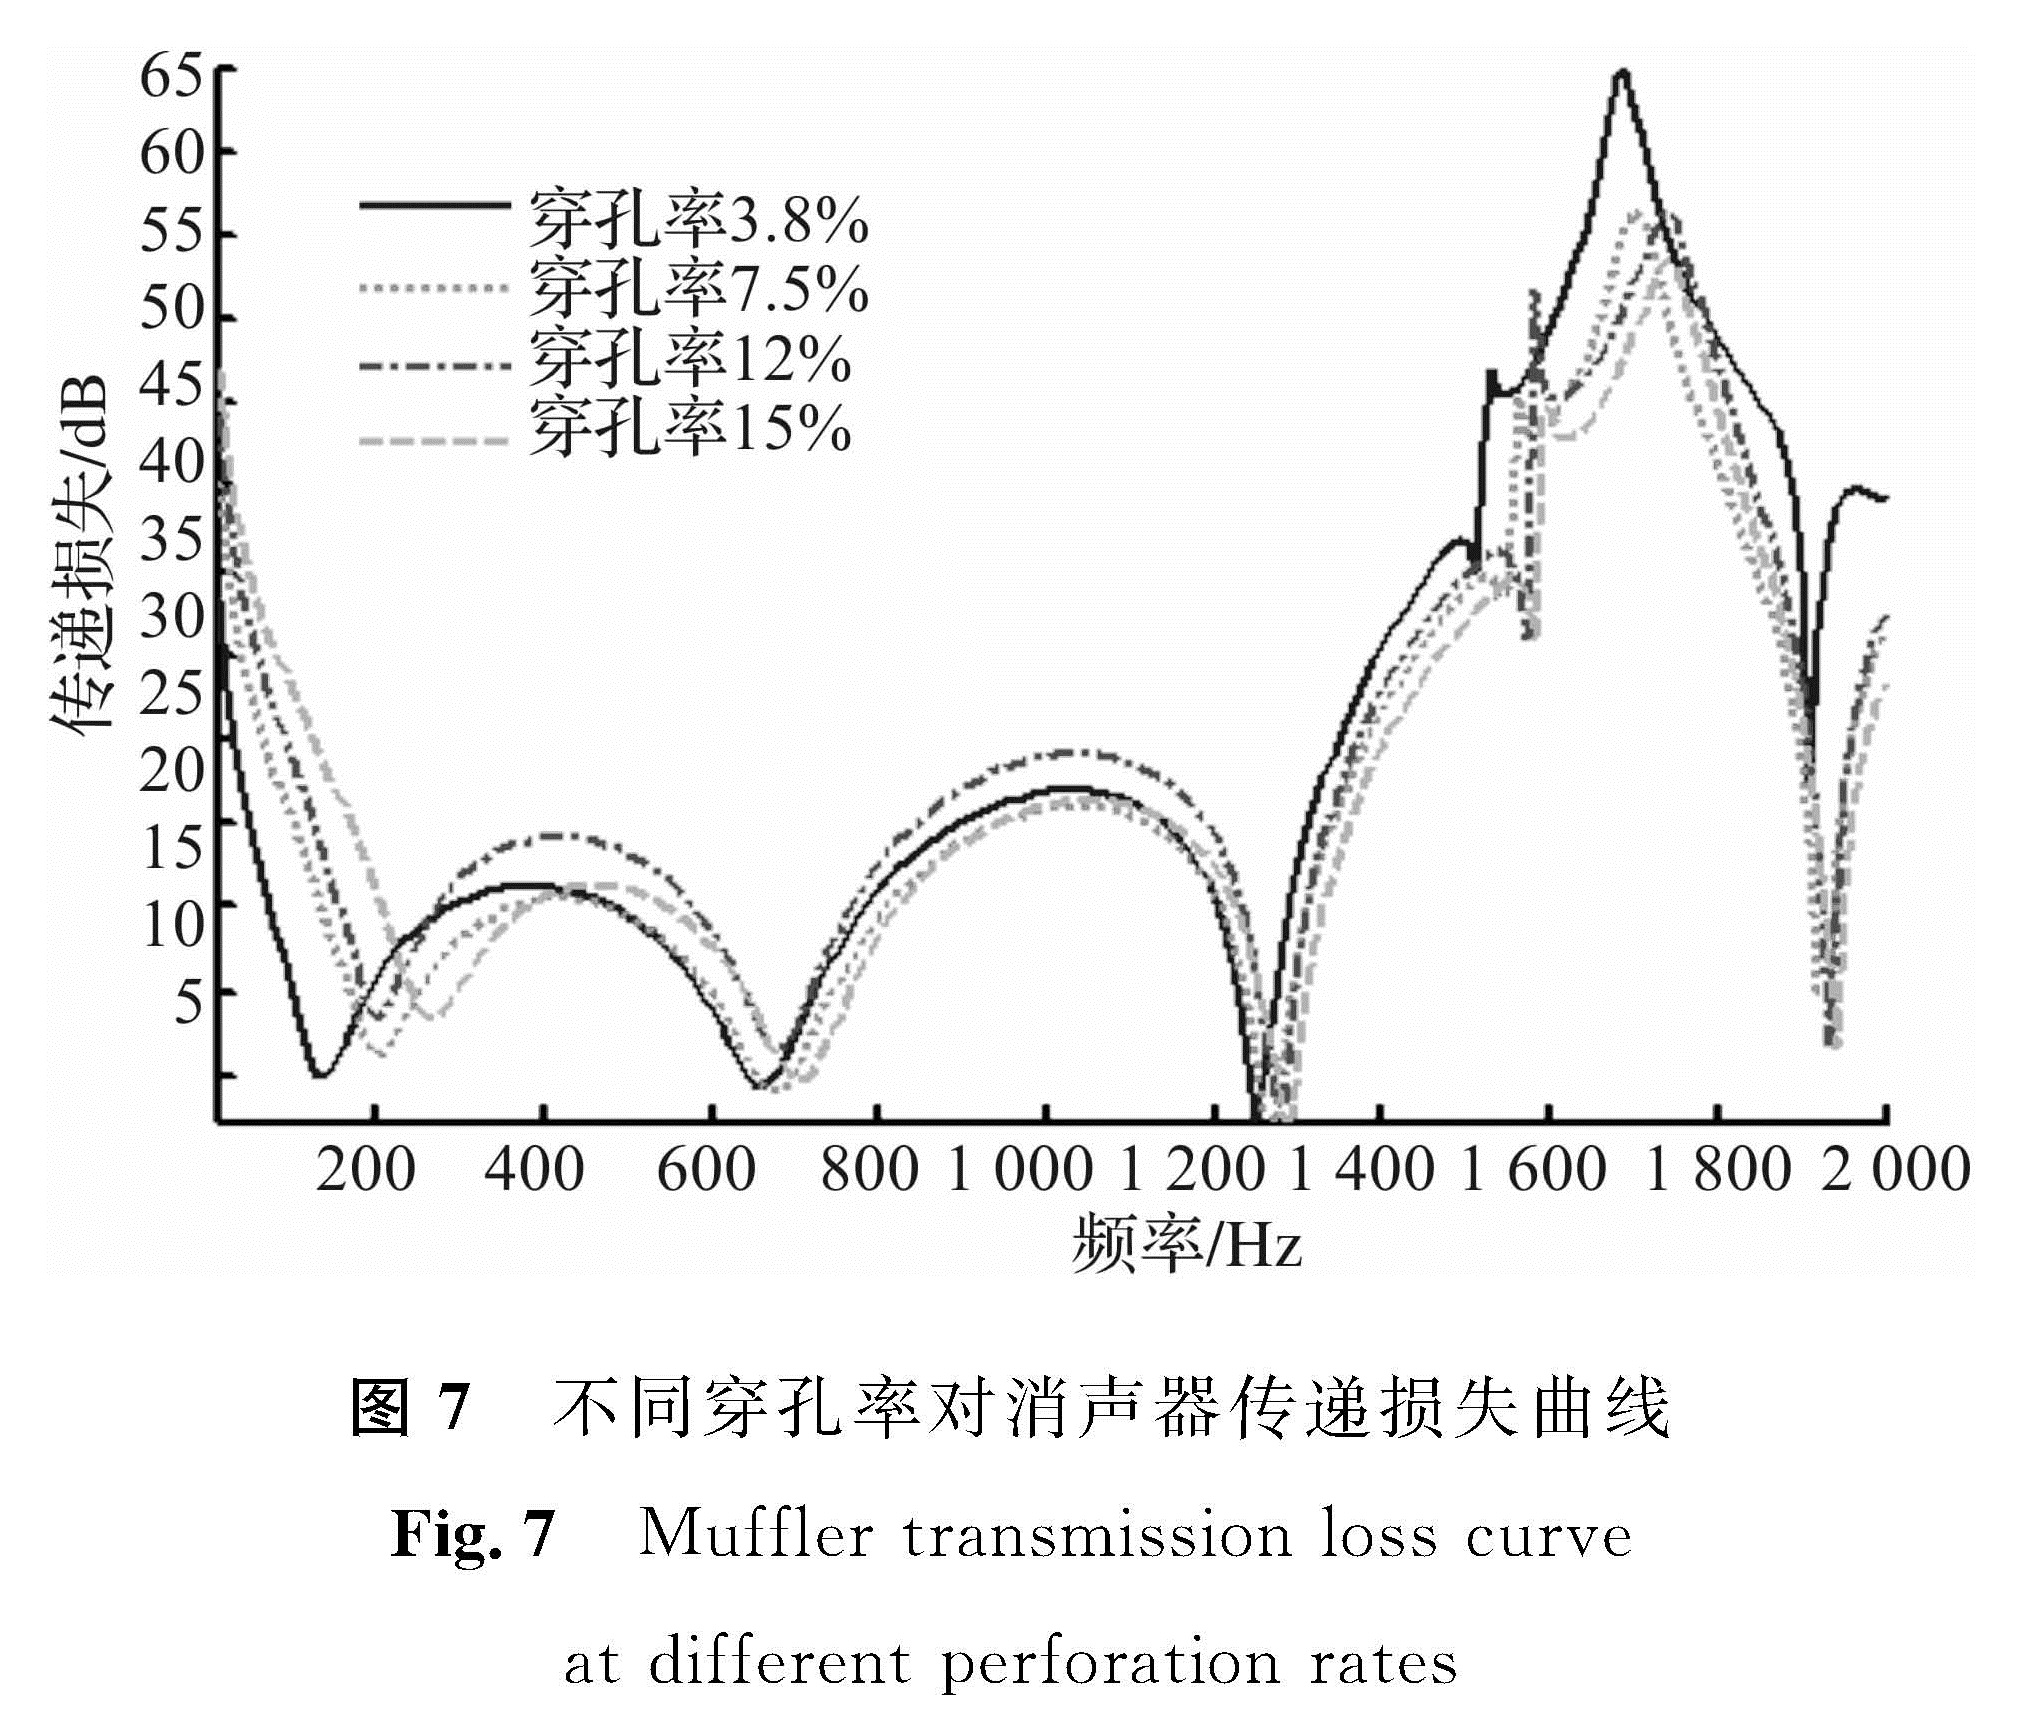 图7 不同穿孔率对消声器传递损失曲线<br/>Fig.7 Muffler transmission loss curve at different perforation rates